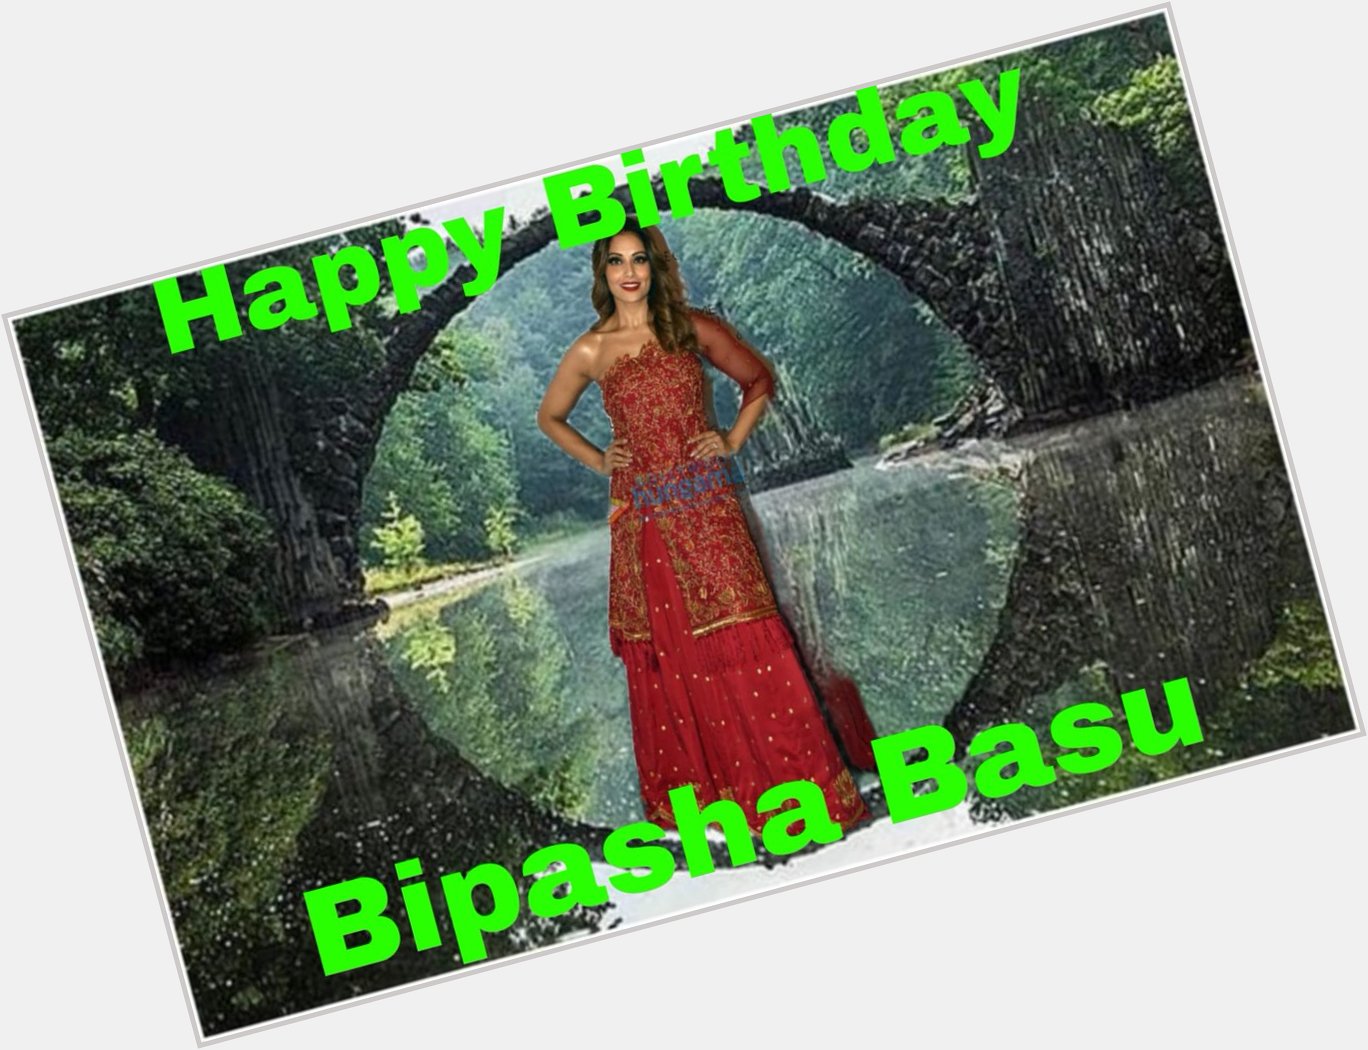 Happy Birthday 
Bipasha Basu   